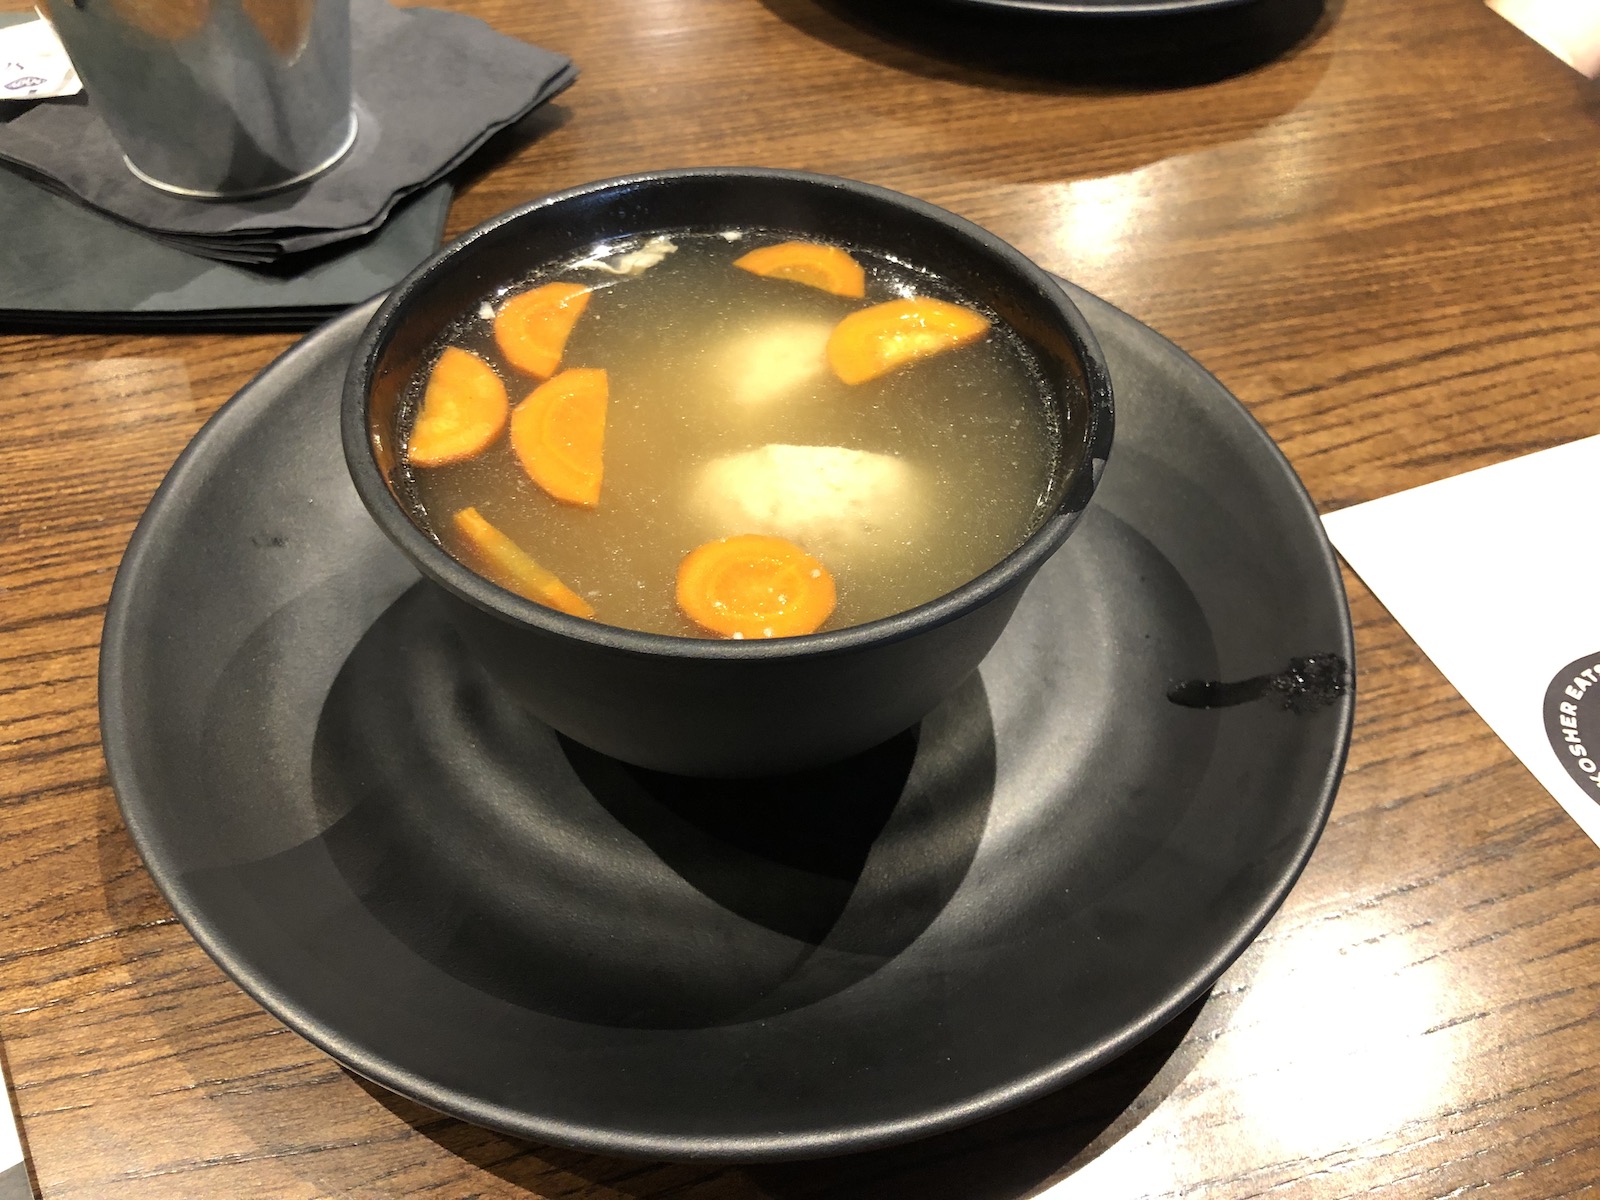 chicken soup with matzah balls